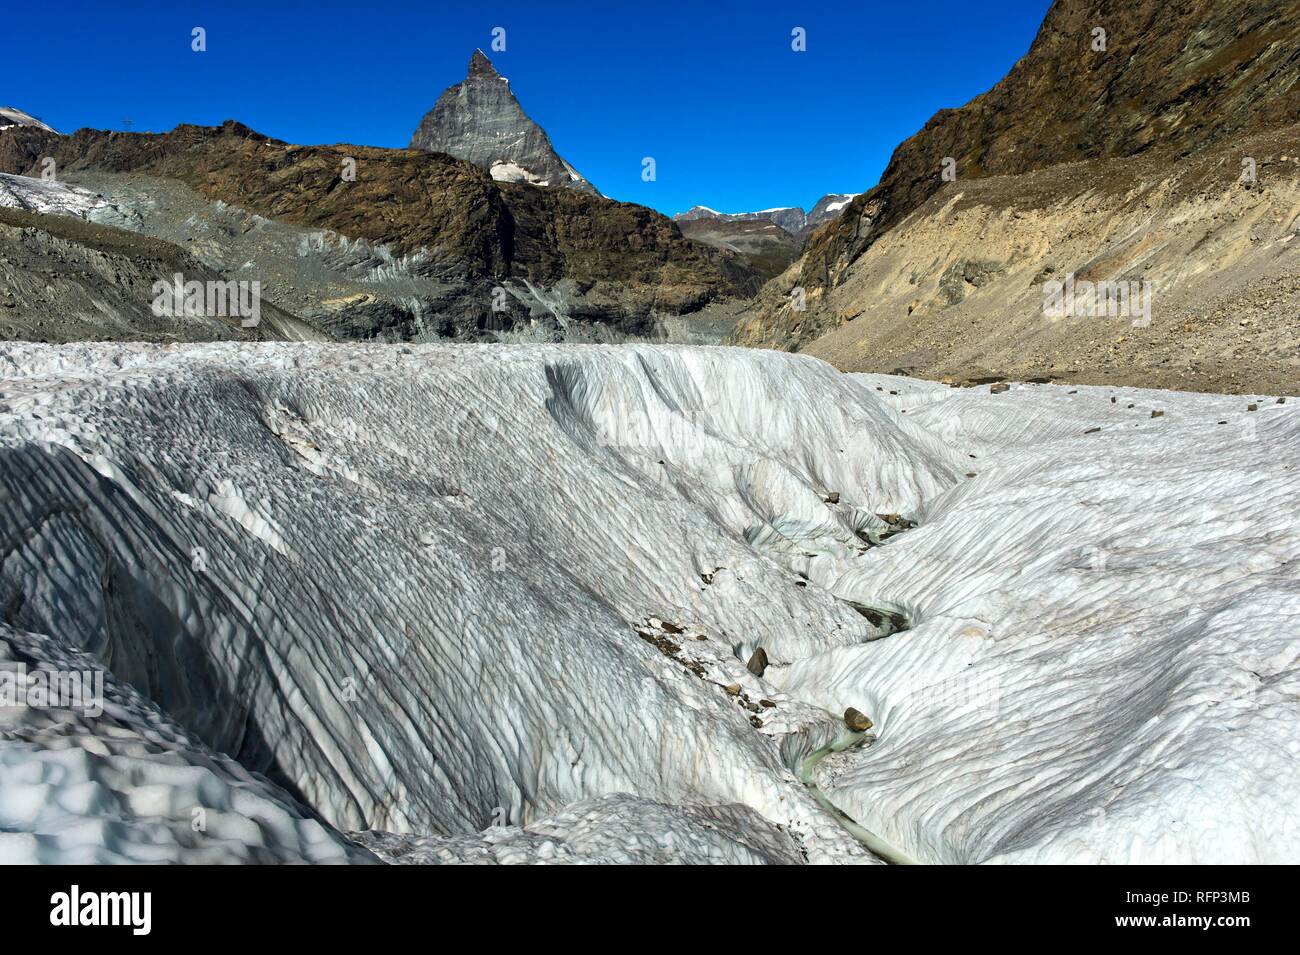 Ampia crepaccio sul ghiacciaio Gorner, Cervino dietro, Zermatt, Vallese, Svizzera Foto Stock